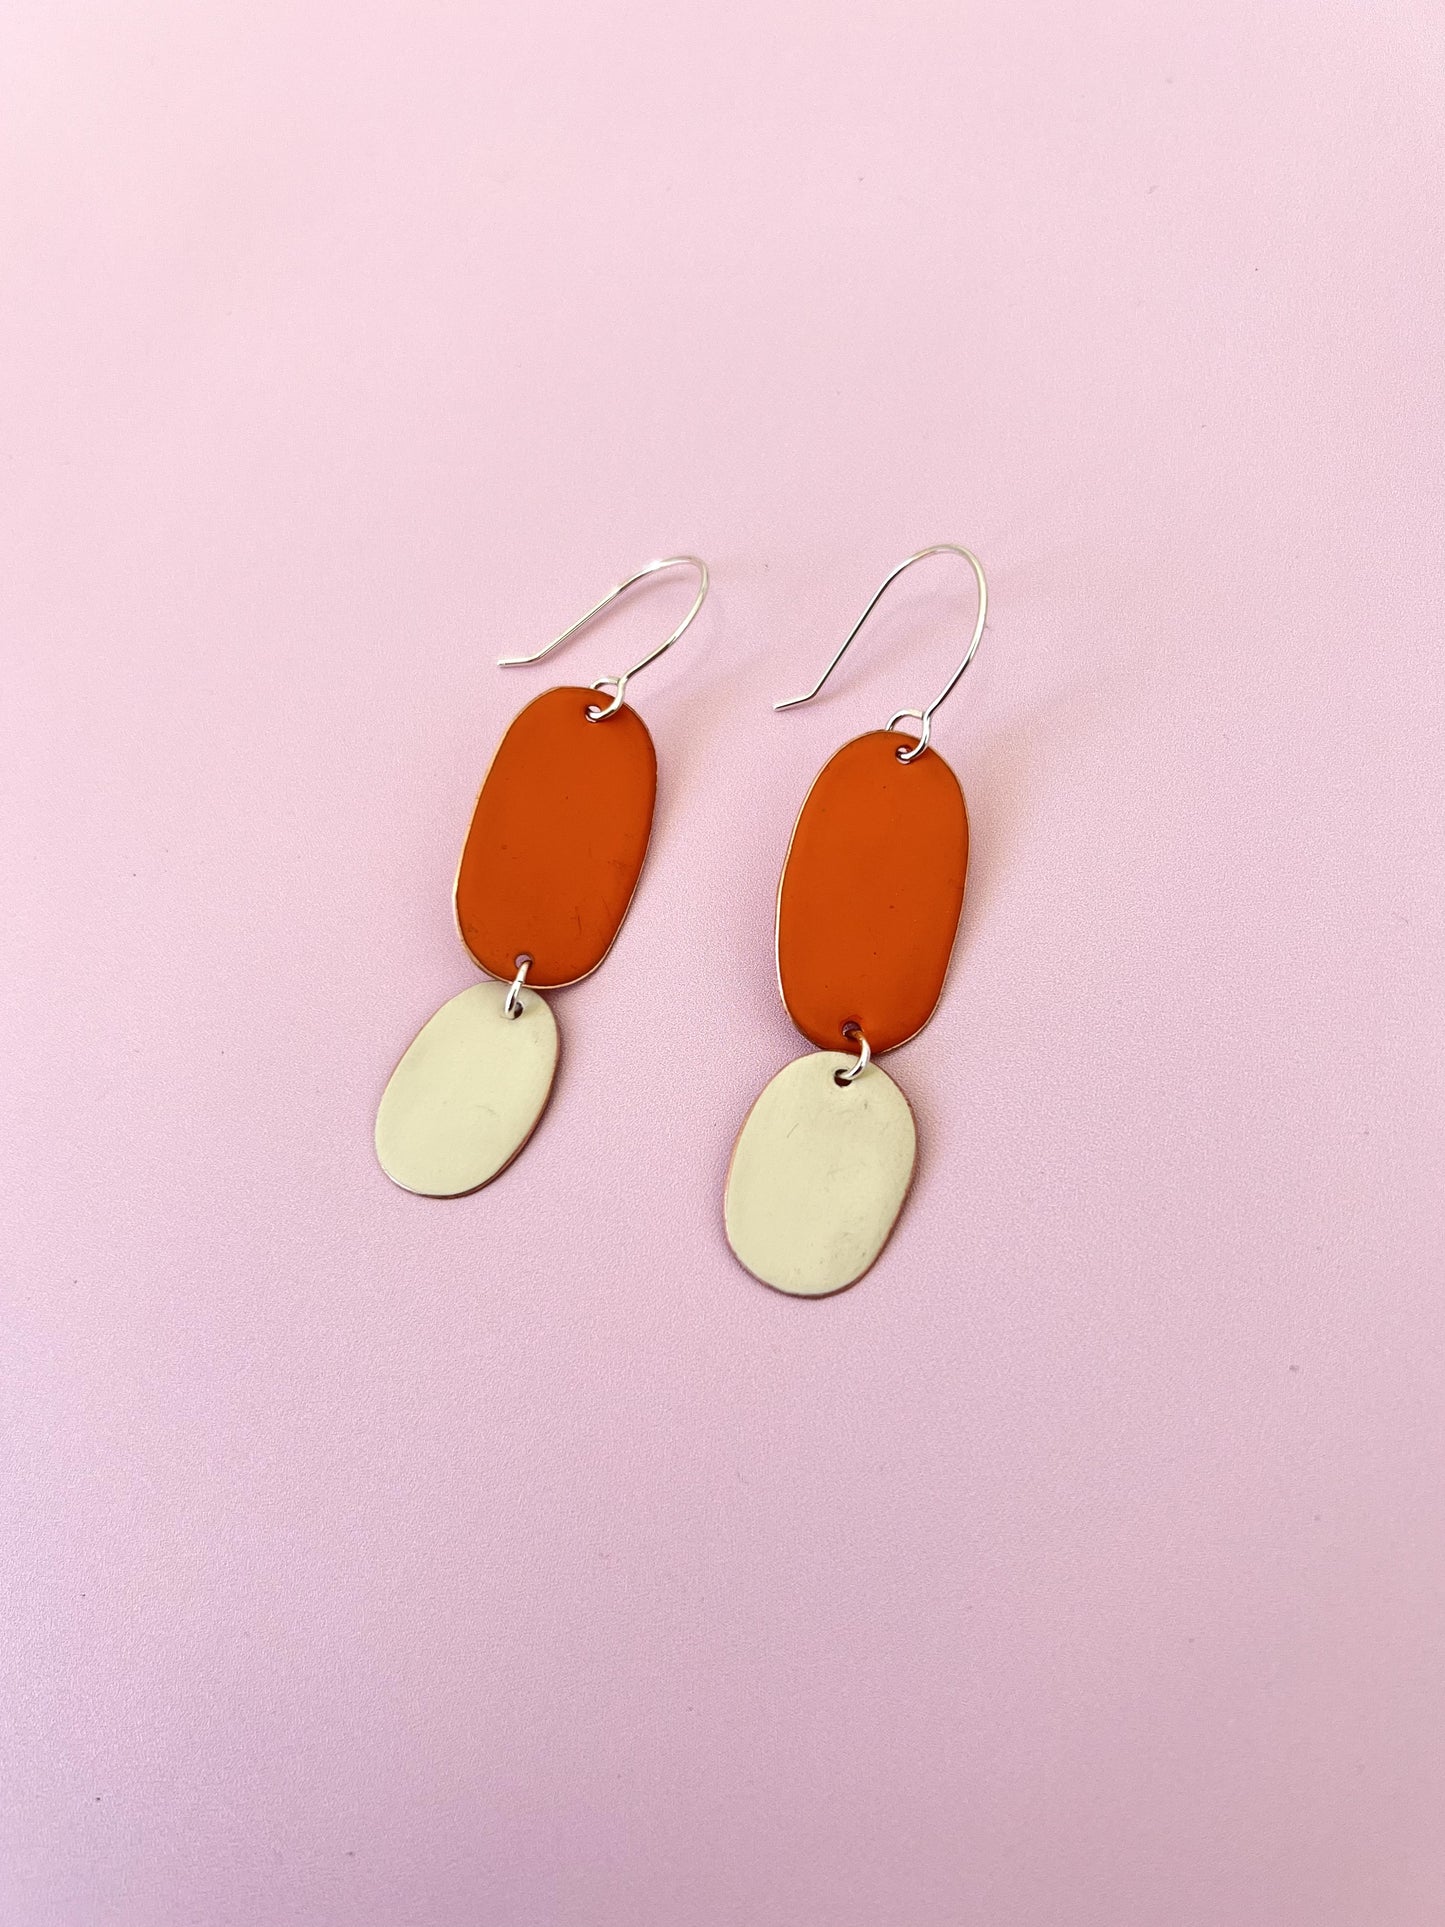 Double Drop Earrings - Orange / Ivory